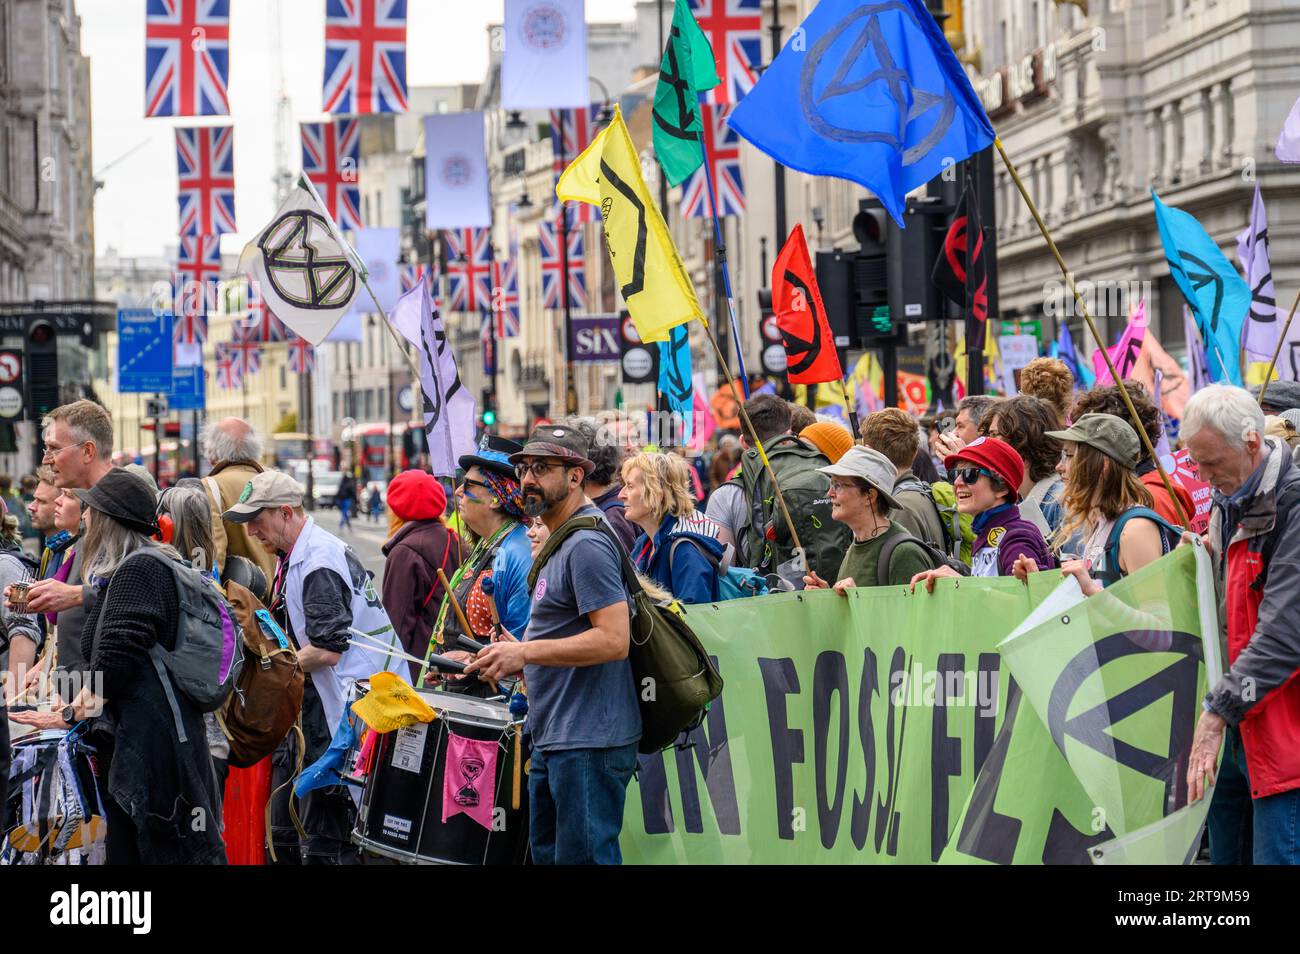 LONDRES - 24 avril 2023 : assistez à la vibrante manifestation XR sur le Strand, où les drapeaux de l'Union Jack flottent au-dessus de la foule passionnée qui plaide pour le clima Banque D'Images